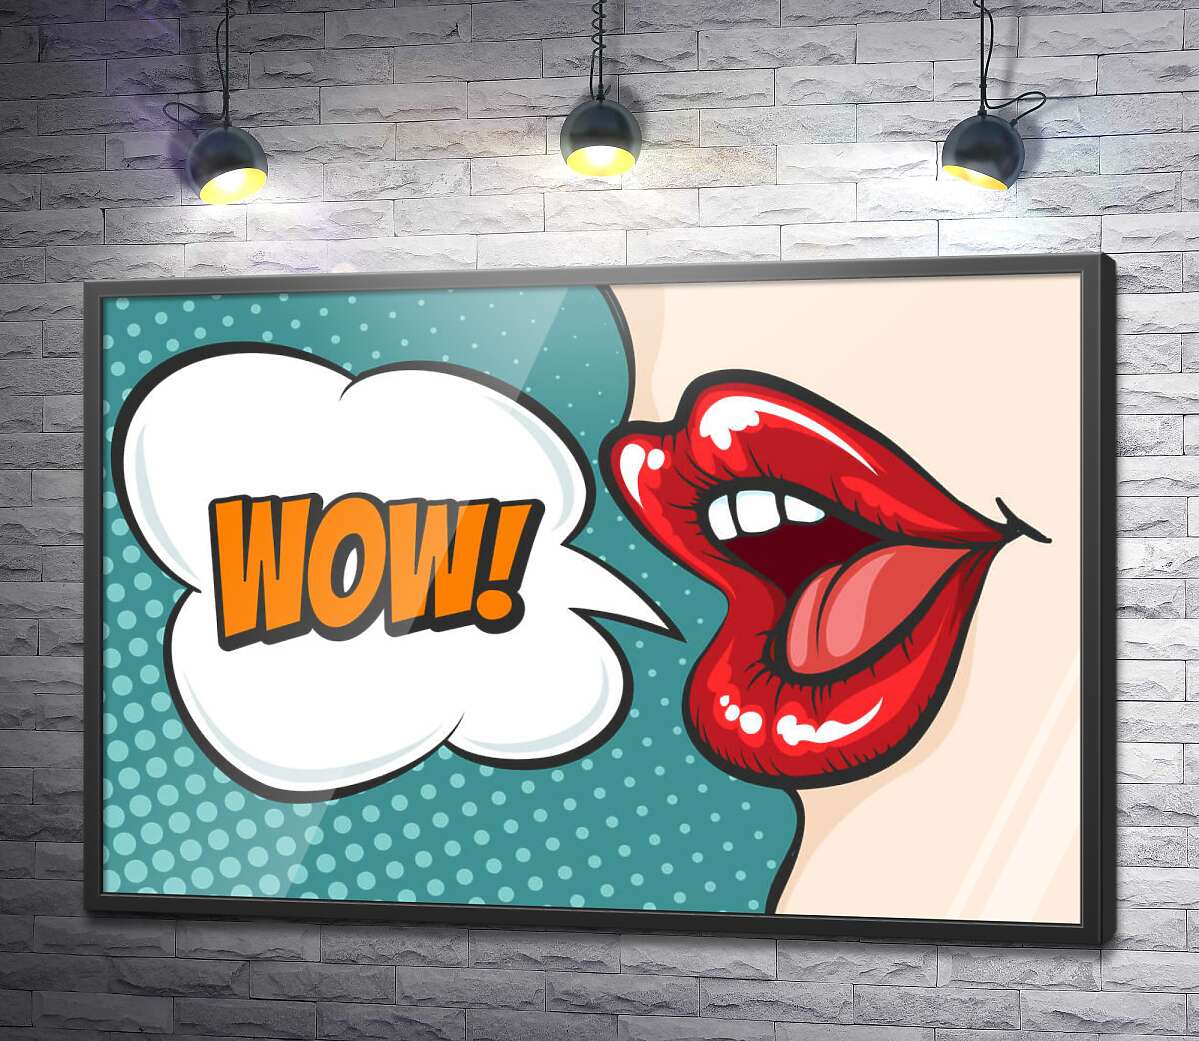 постер Женские губы и выкрик "Wow"